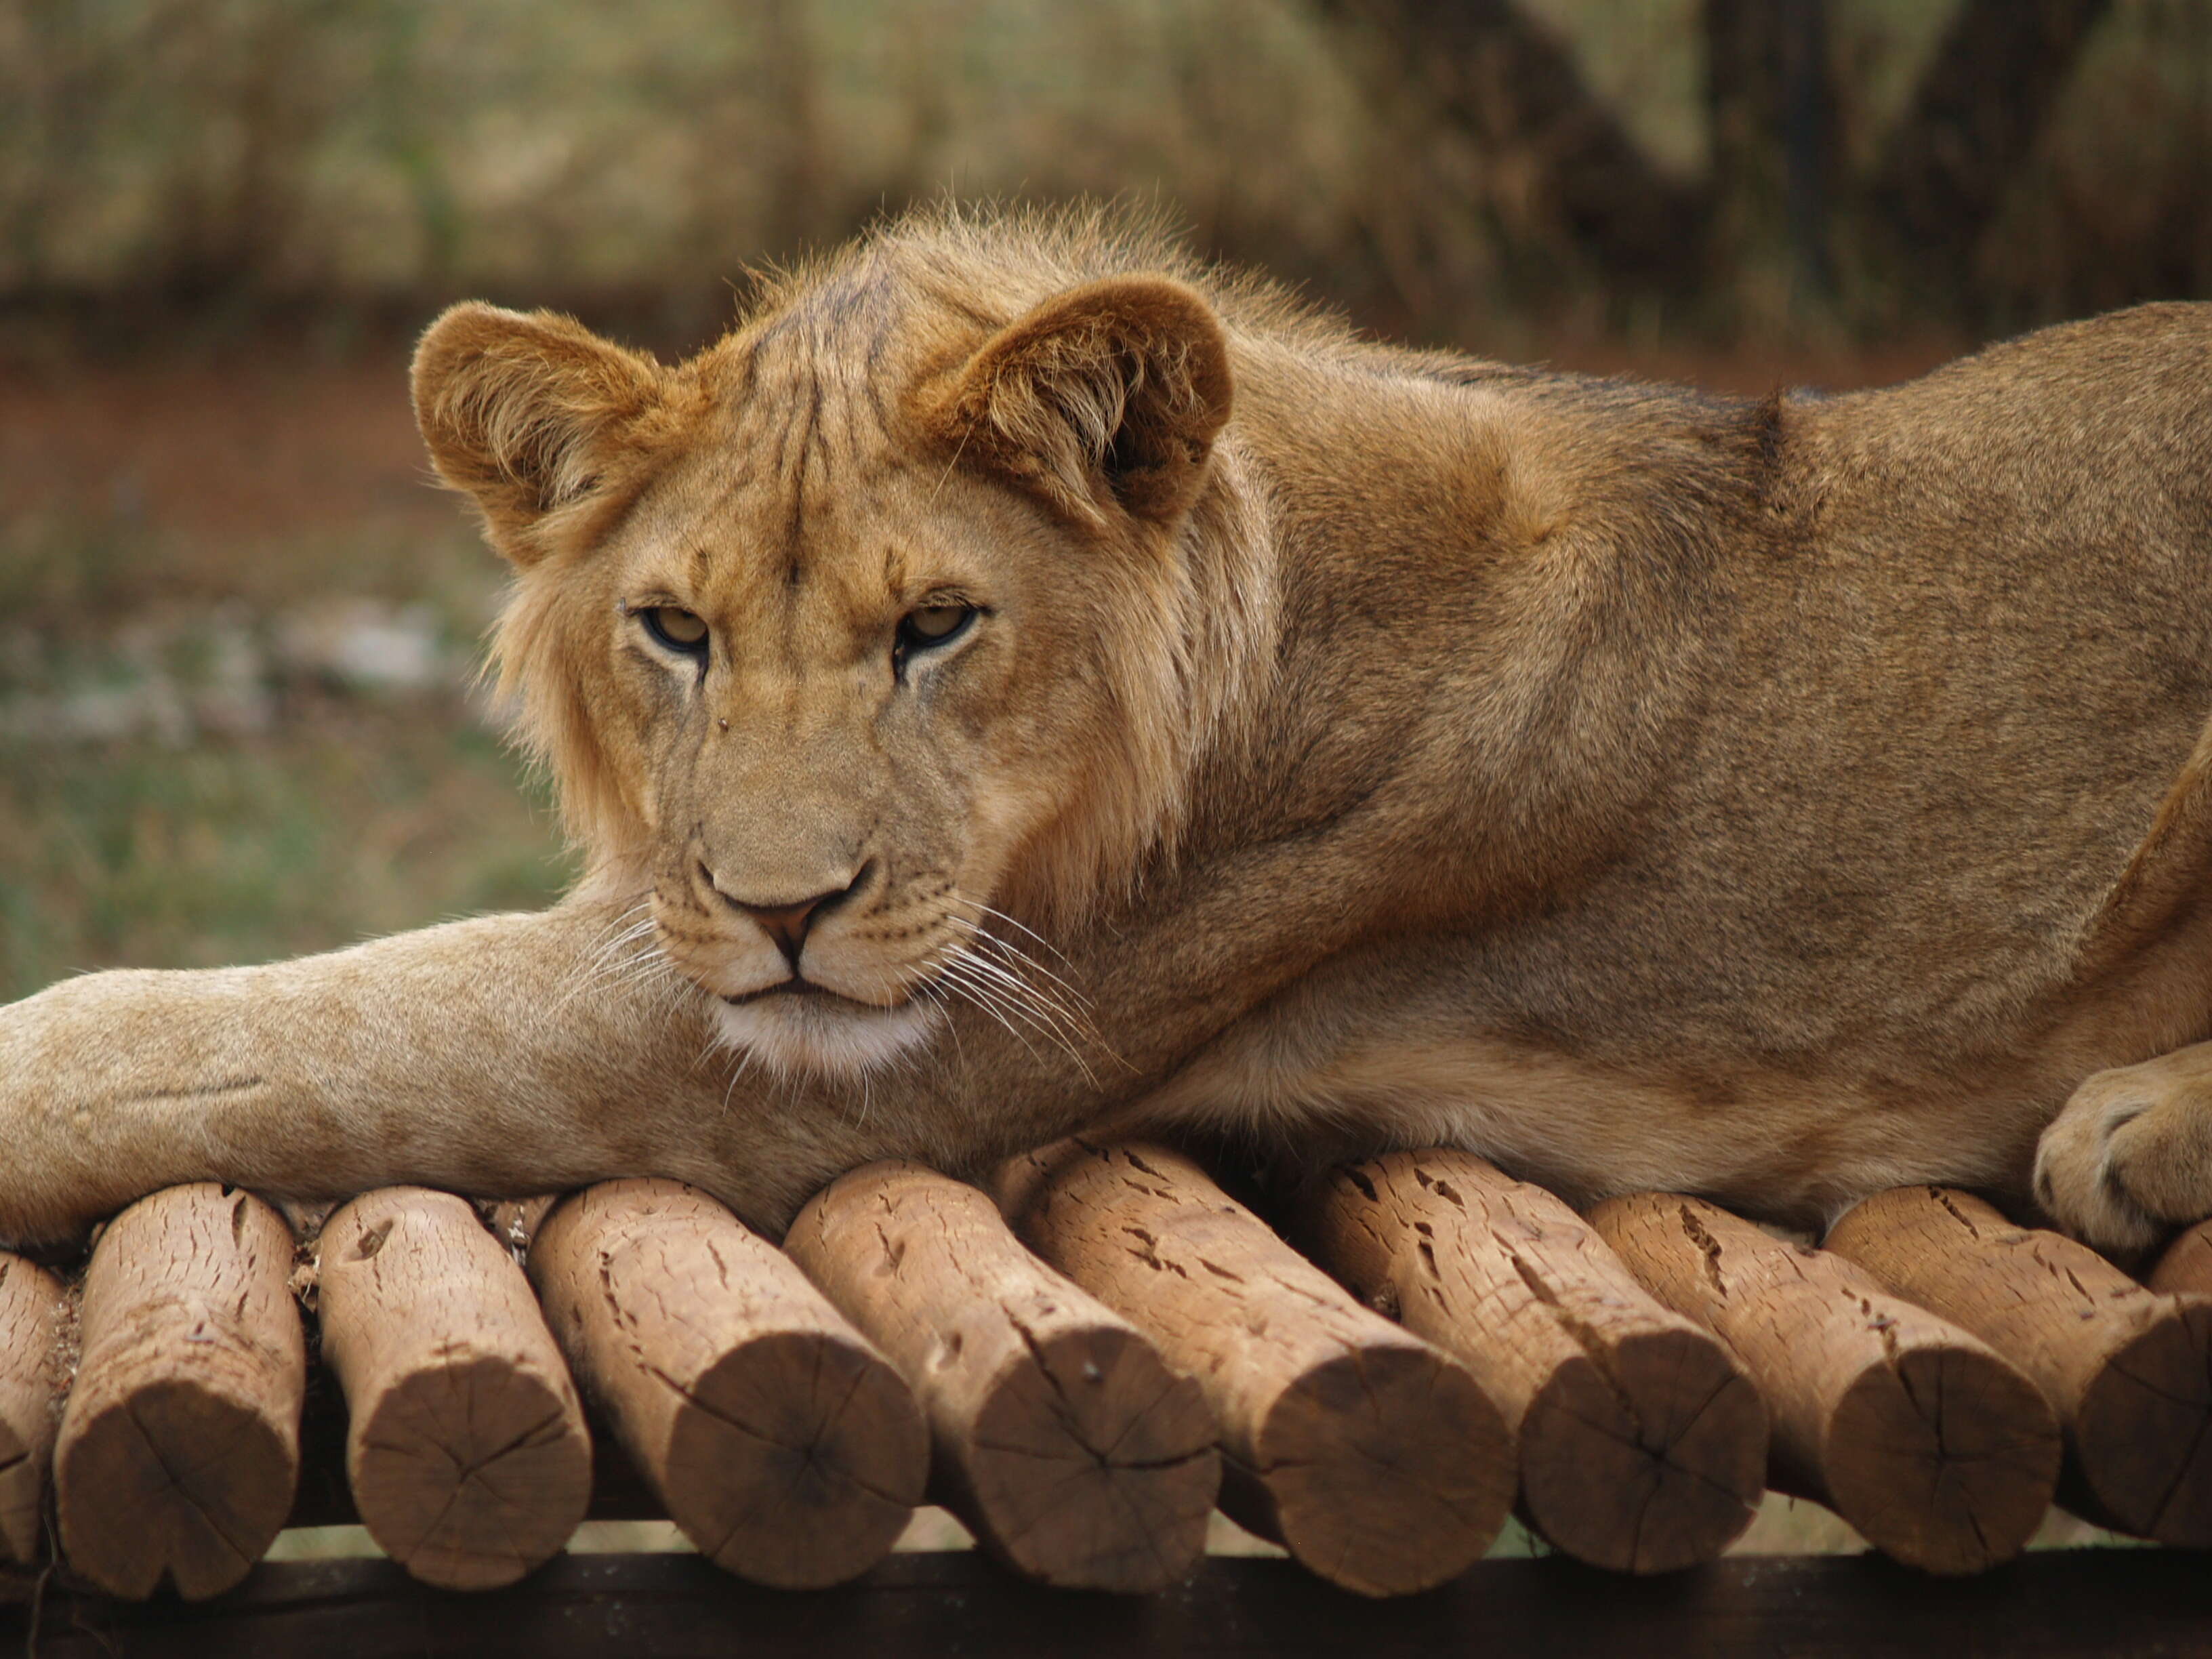 Adult lion resting on platform